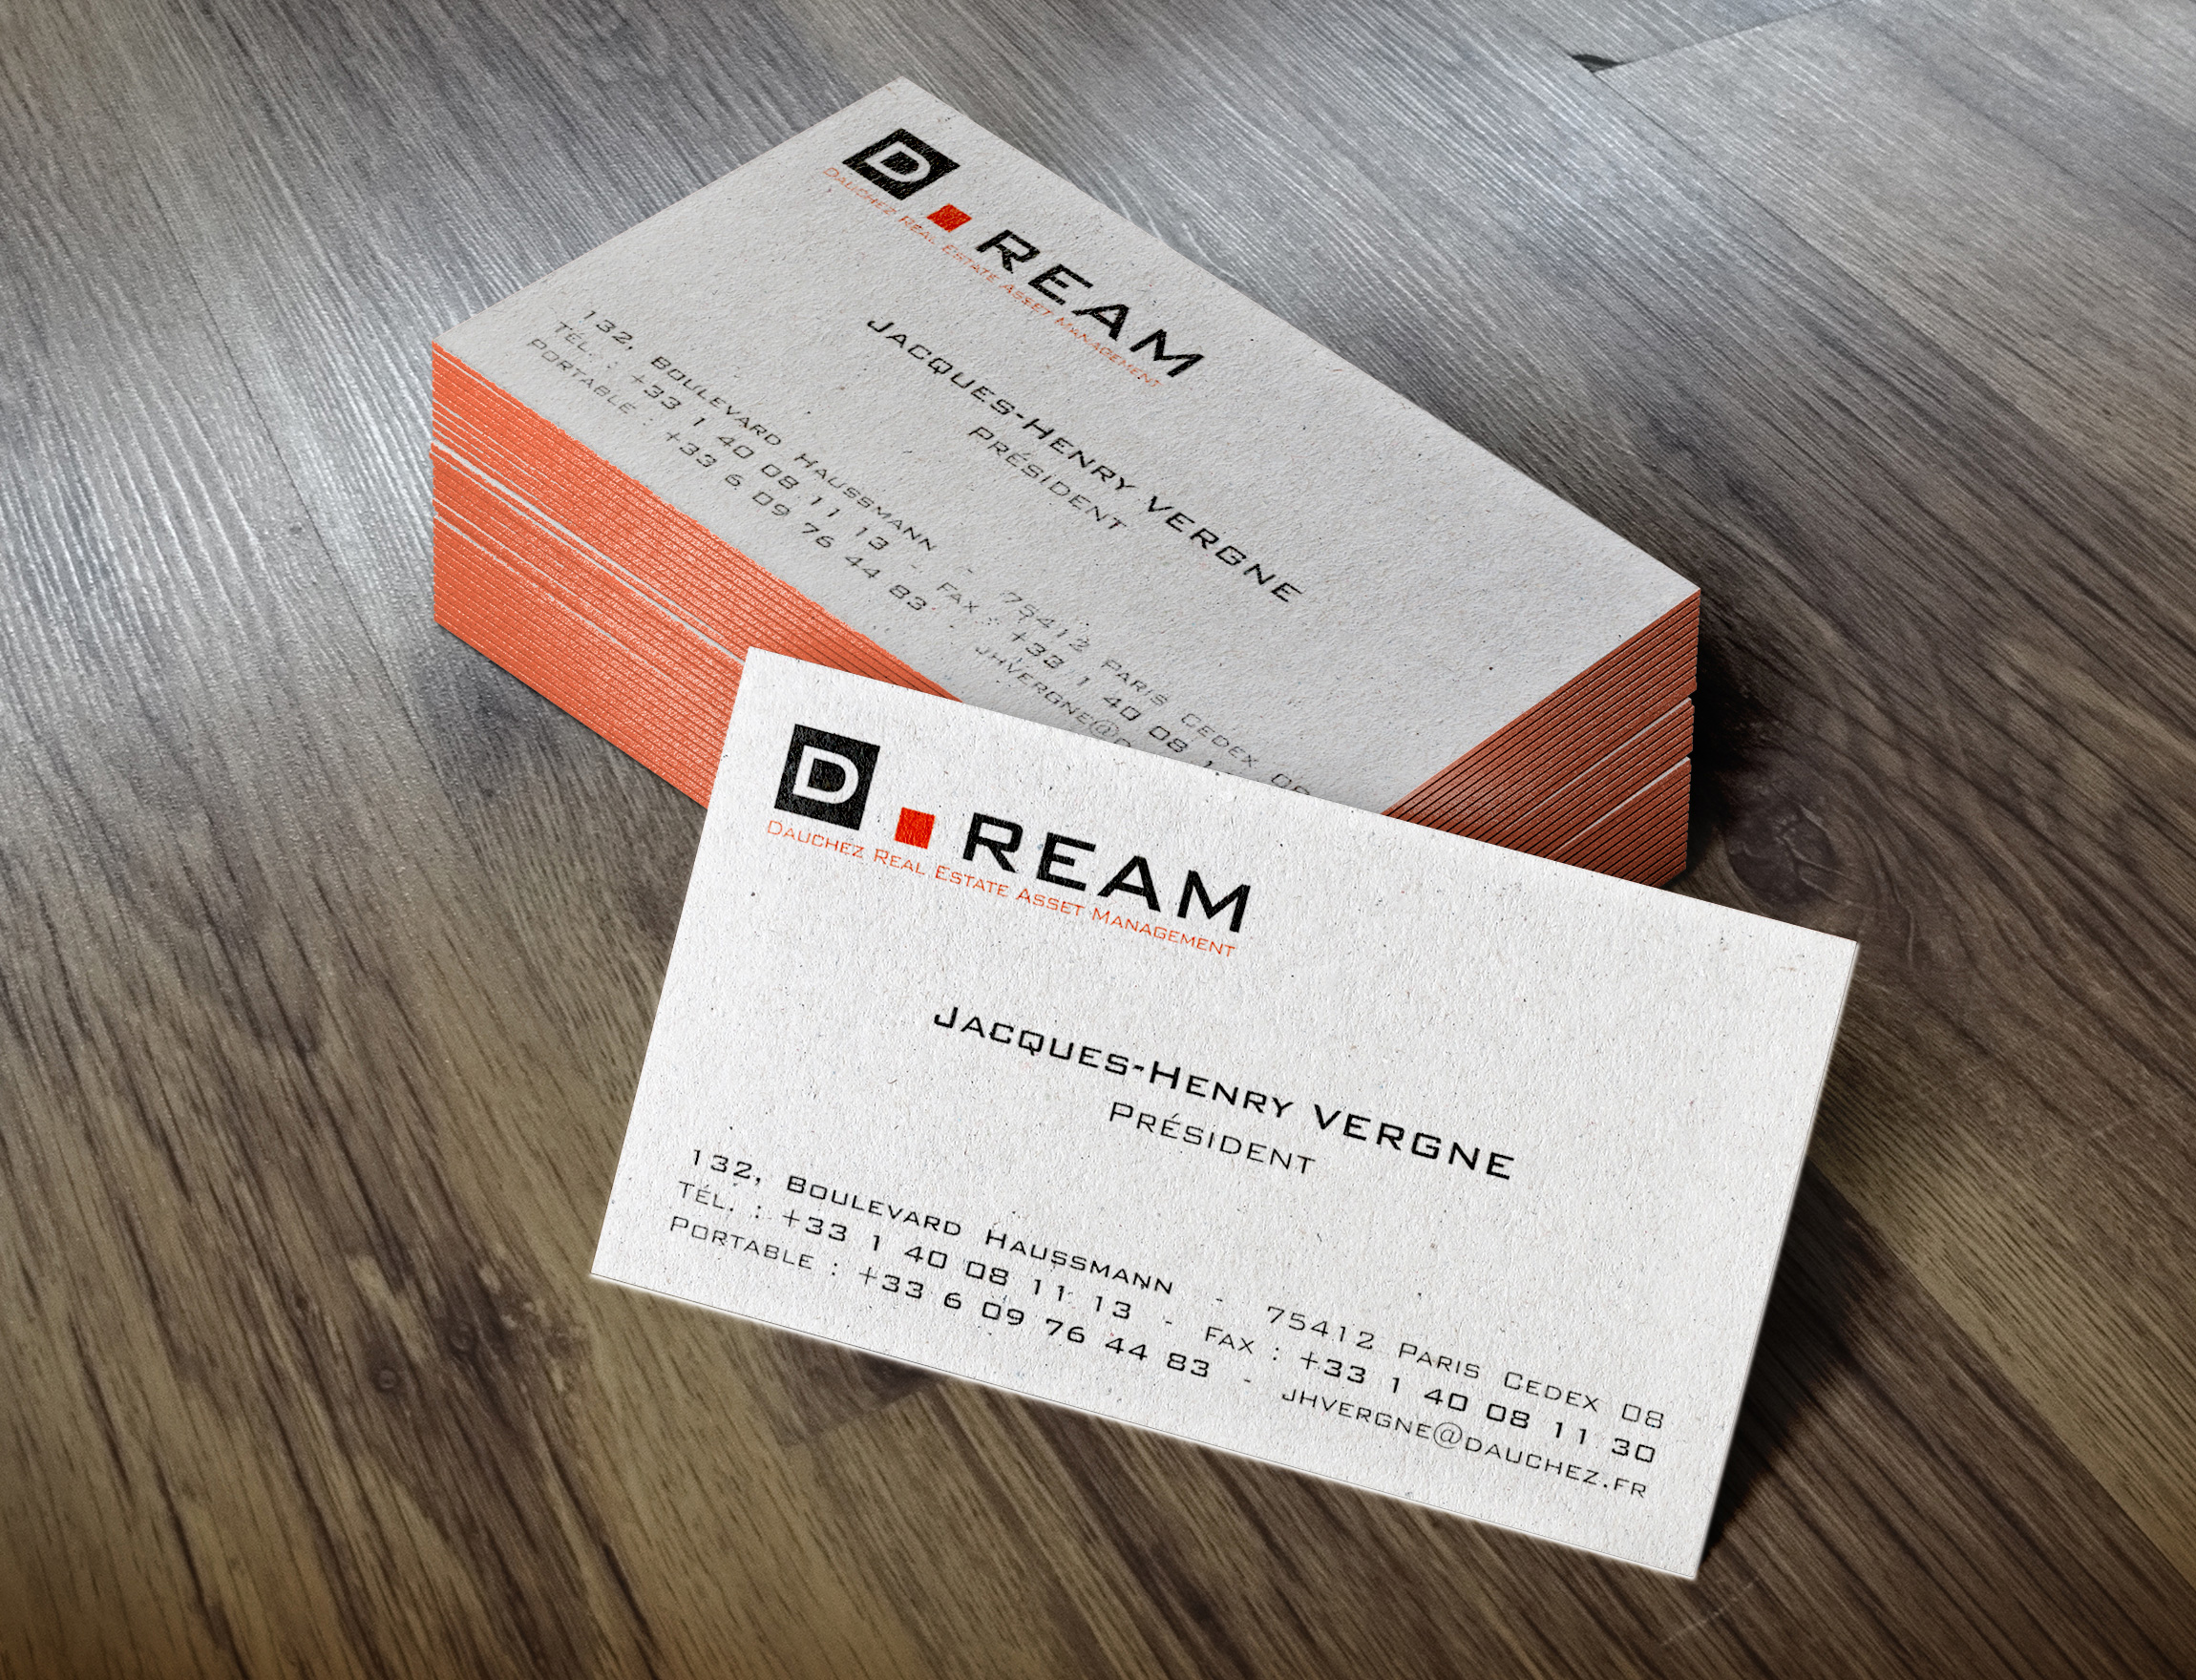 Création du logo D.Ream et carte de visite